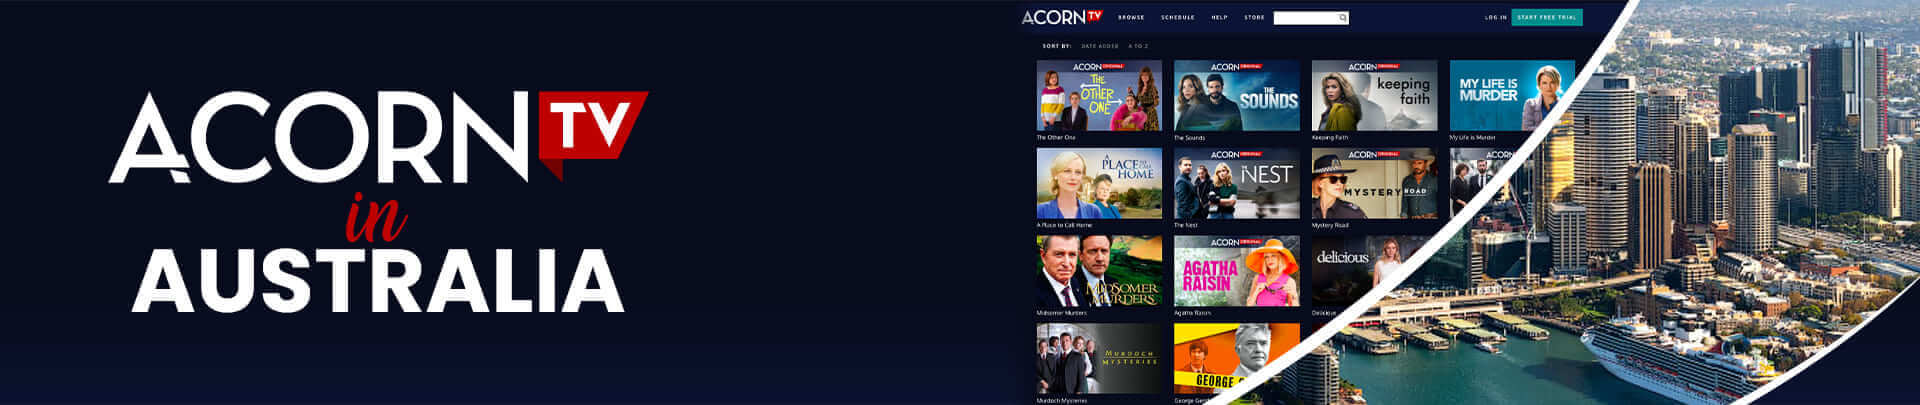 Acorn TV in Australia